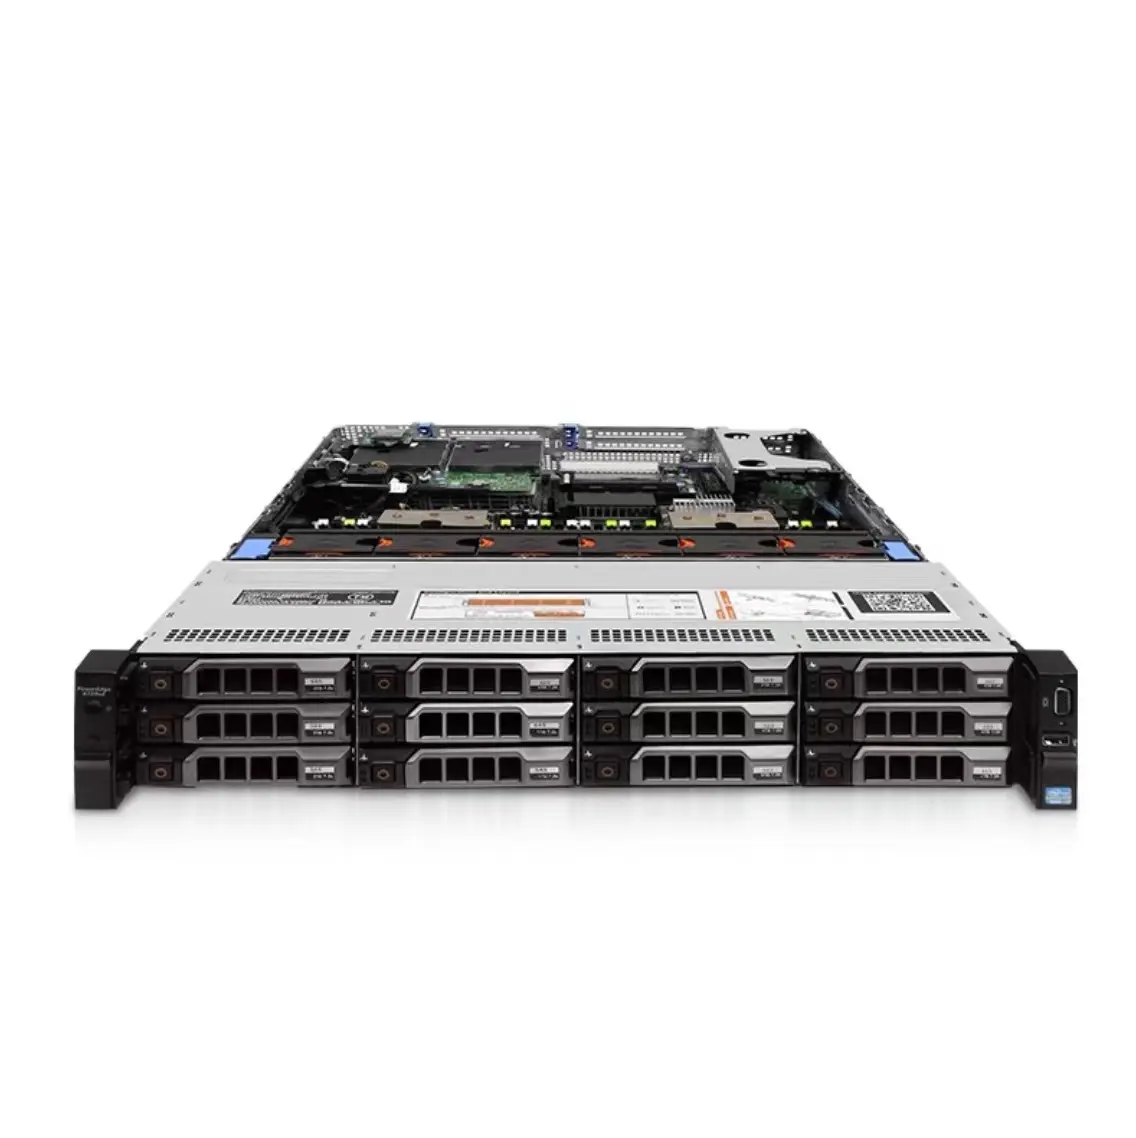 Miglior prezzo di seconda mano R730xd Network Rack Server Server utilizzati o ricondizionati